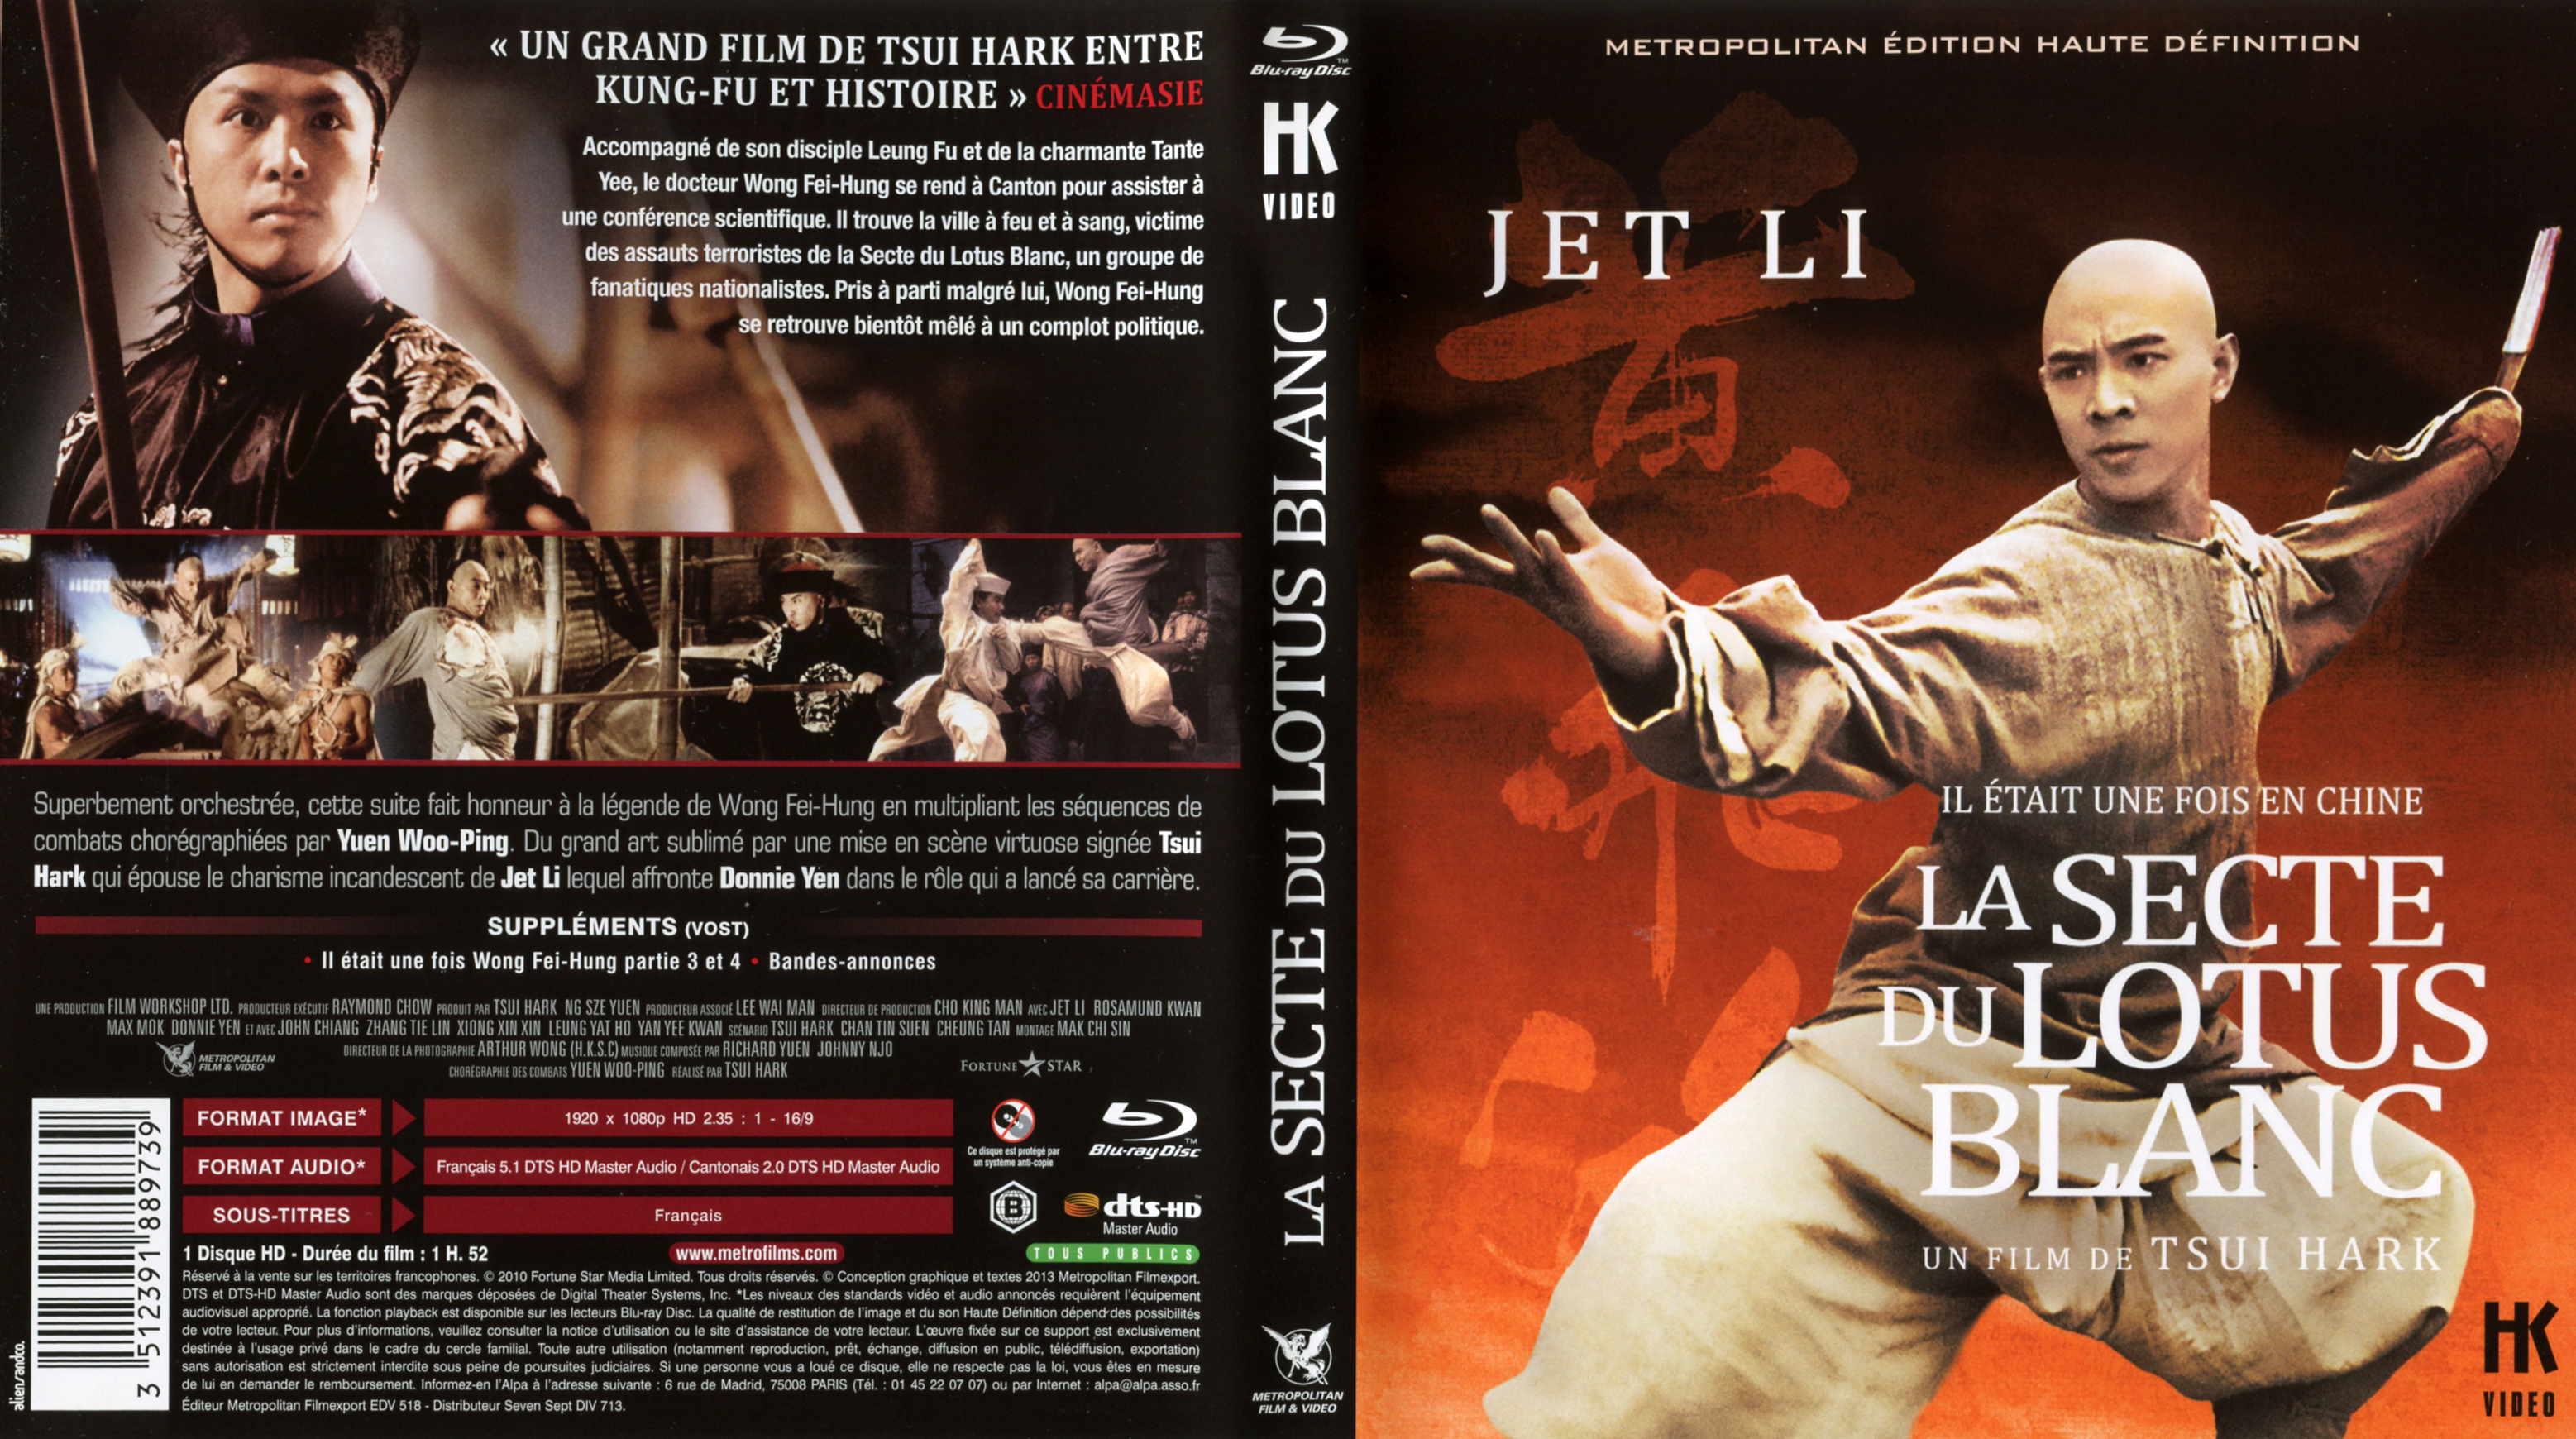 Jaquette DVD Il tait une fois en Chine II : la secte du lotus blanc (BLU-RAY)